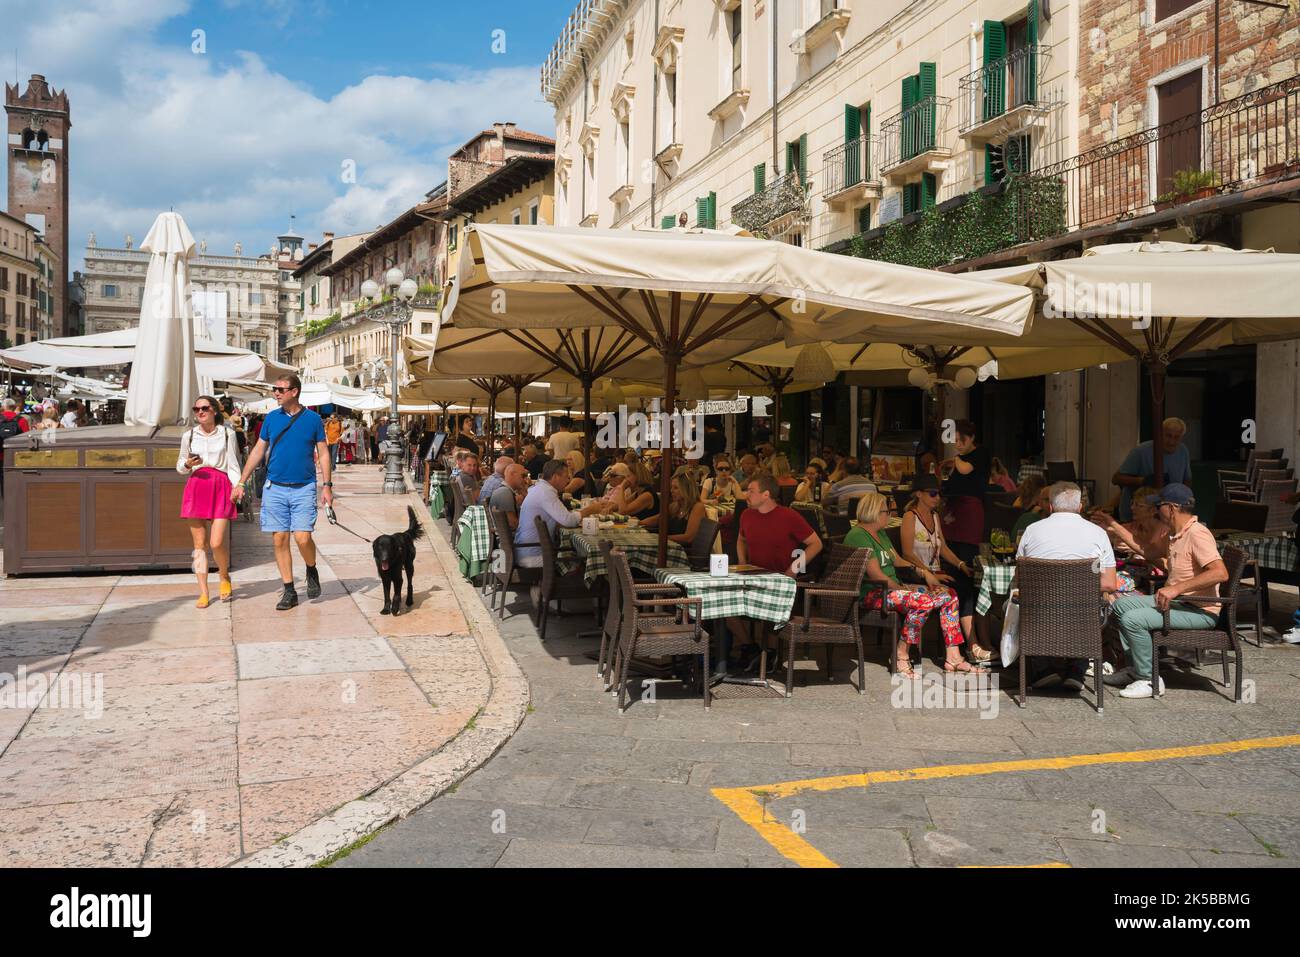 Piazza delle Erbe, vue en été des personnes assis à l'extérieur des cafés et des bars de Piazza delle Erbe dans le centre historique de Vérone, Italie Banque D'Images